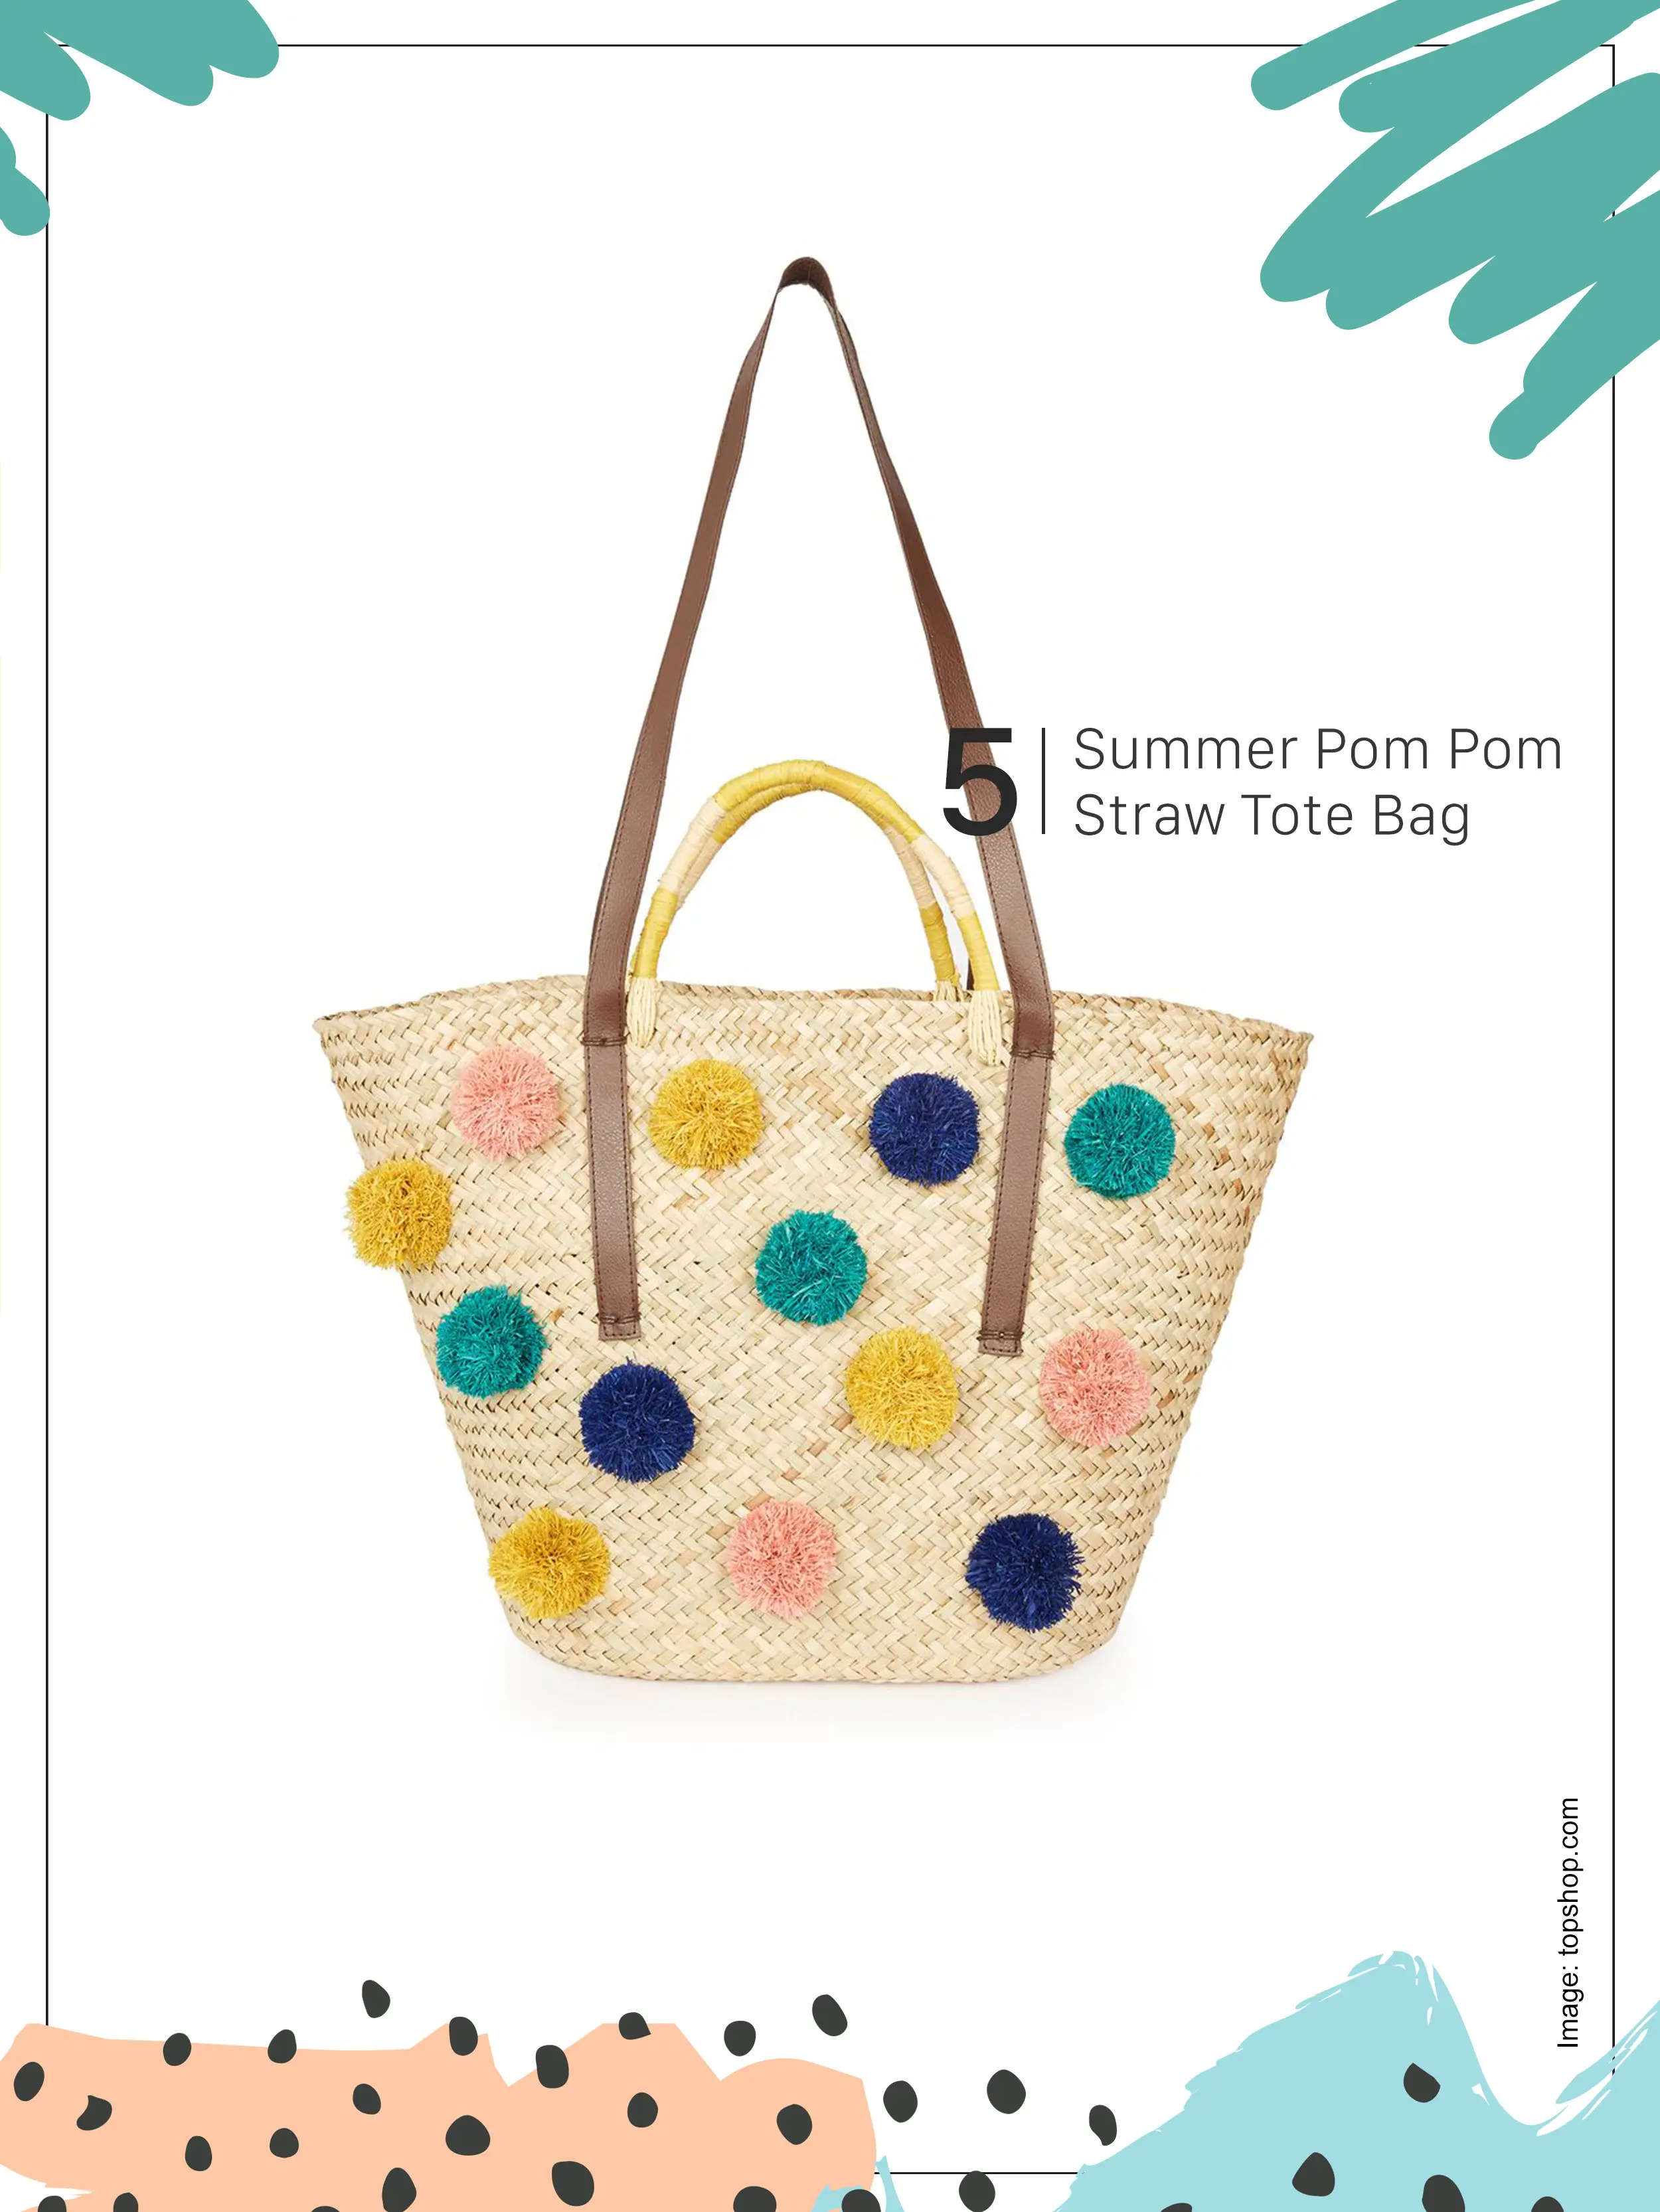 Mix and match straw tote bag yang bisa bikin penampilan menarik. (topshop.com)